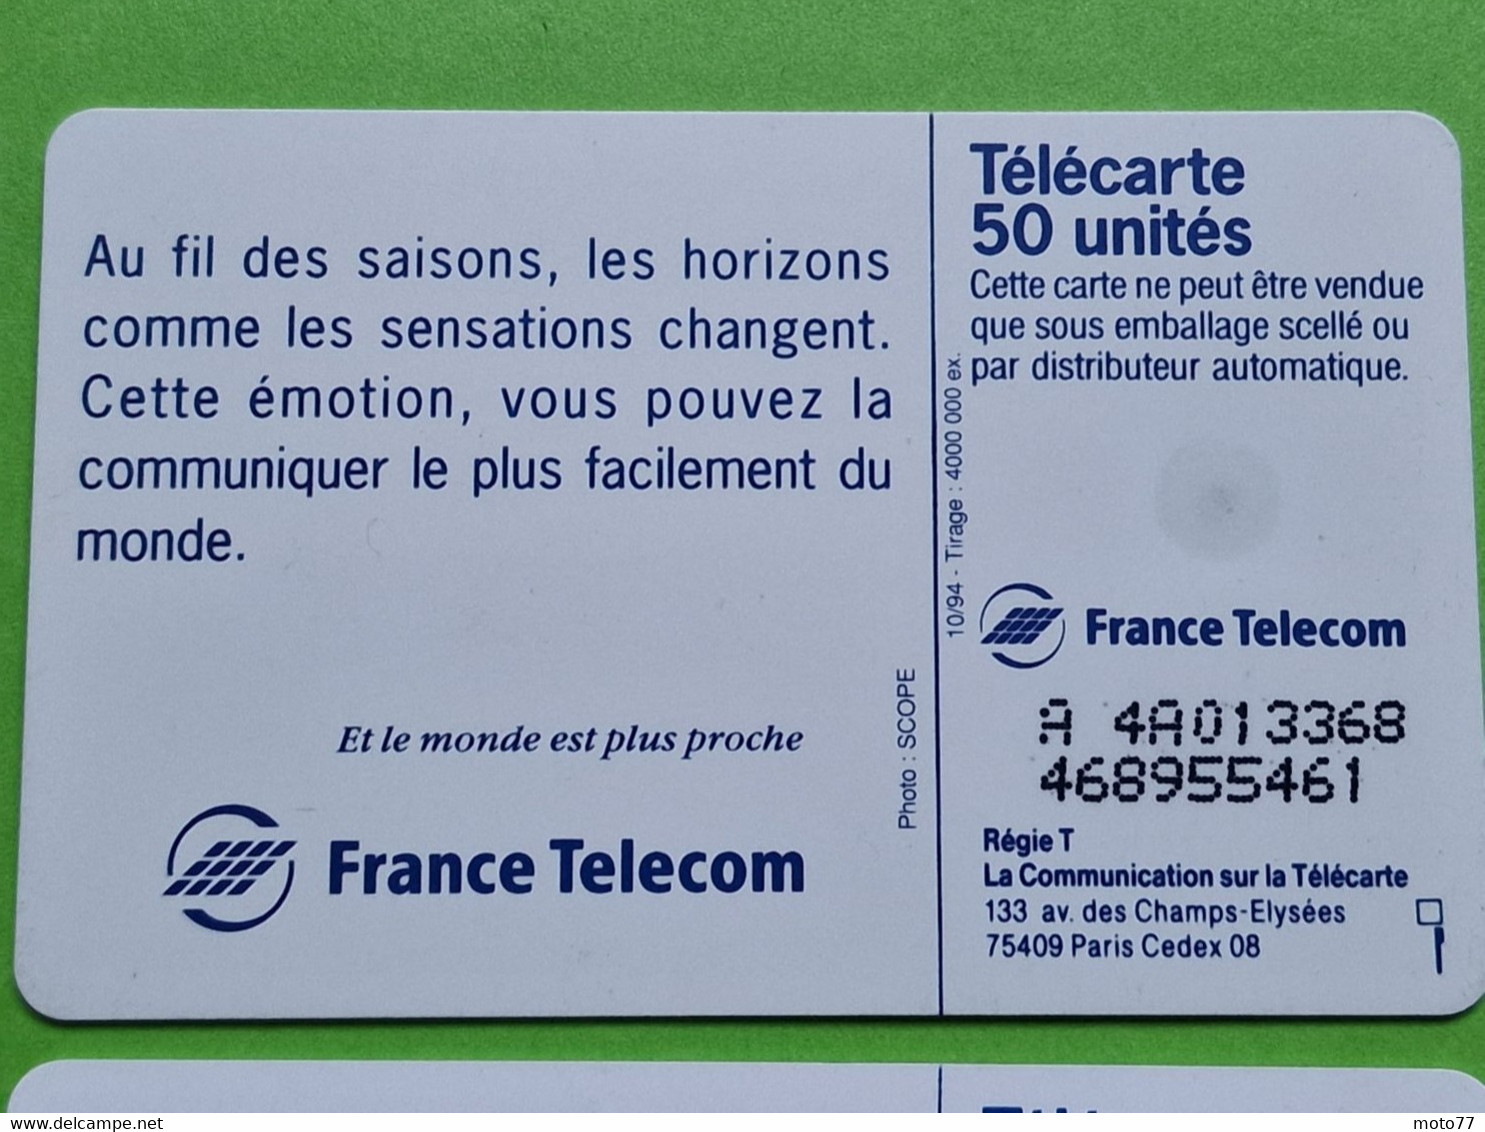 Lot série des 4 cartes téléphonique de France - VIDE - Télécarte Cabine téléphone - Les 4 saisons - 1994 95